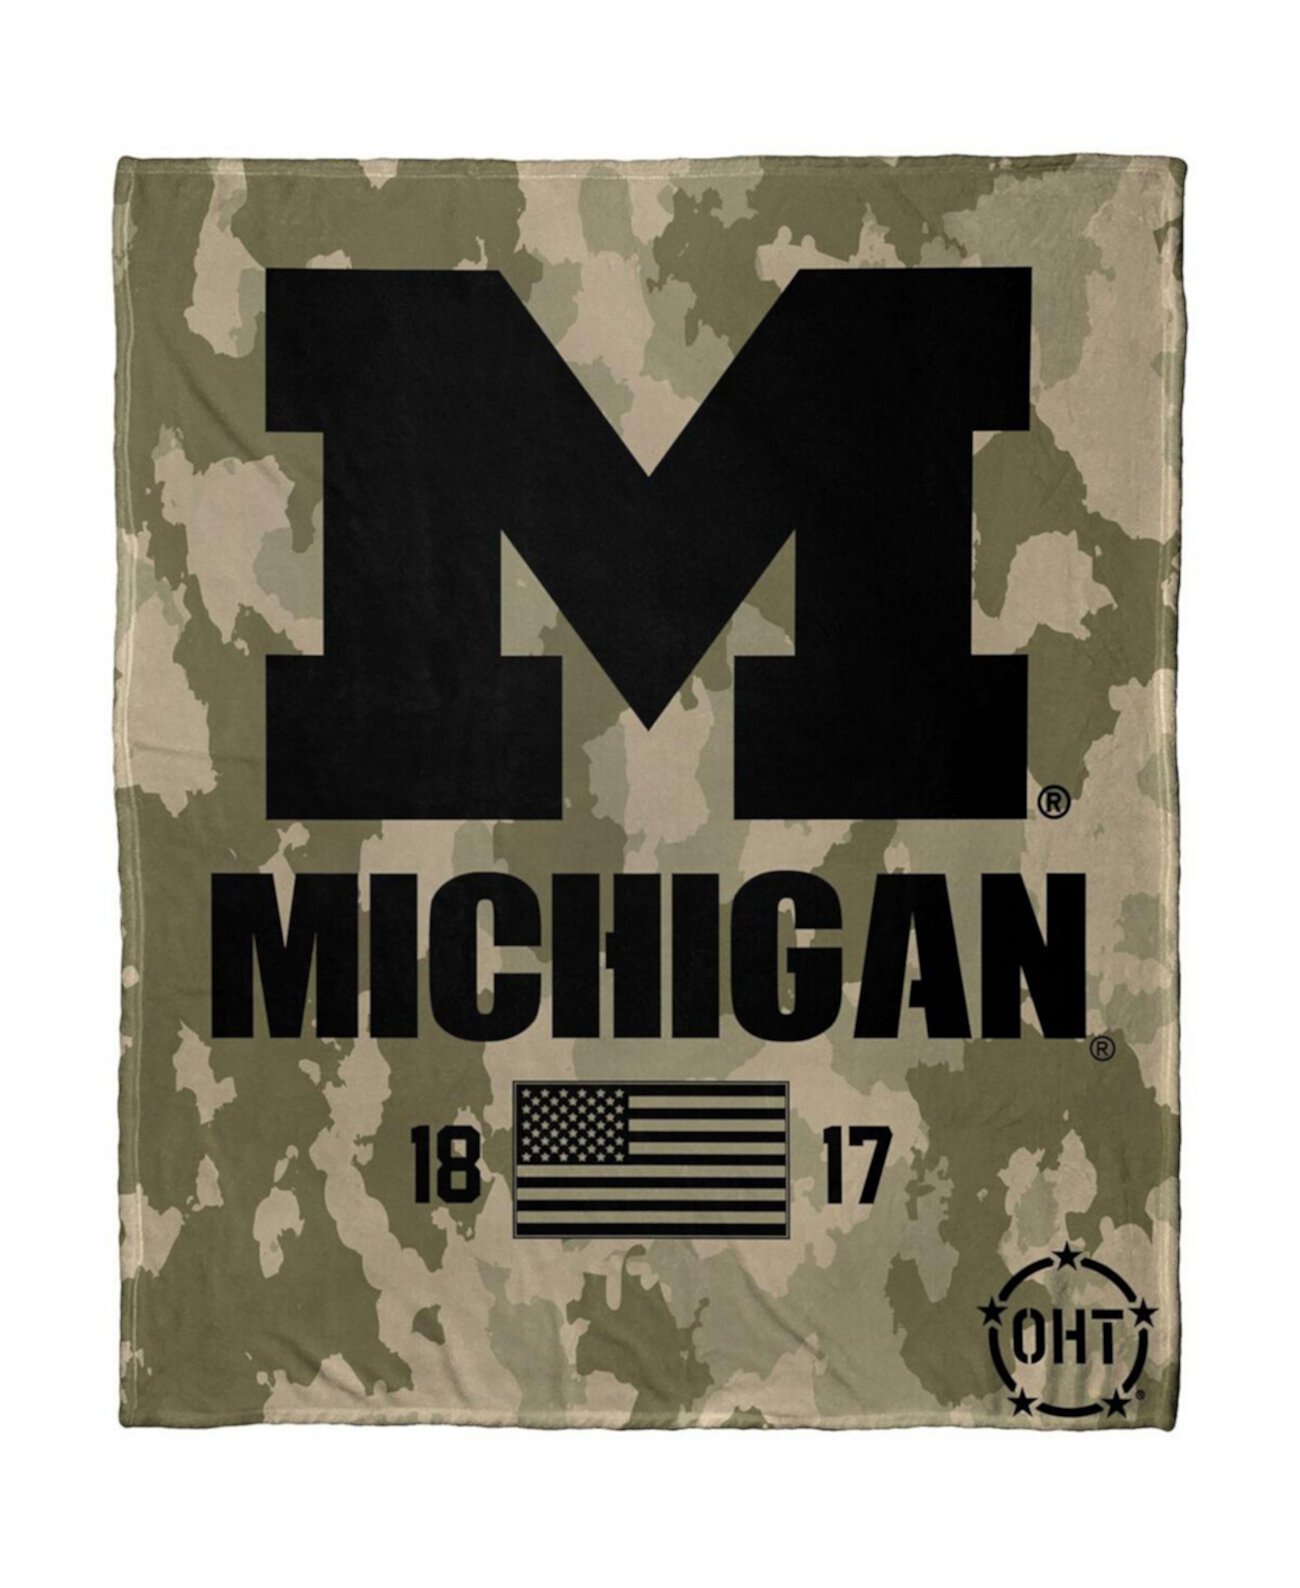 Шелковое одеяло The Group Michigan Wolverines OHT в военном стиле Northwest Company